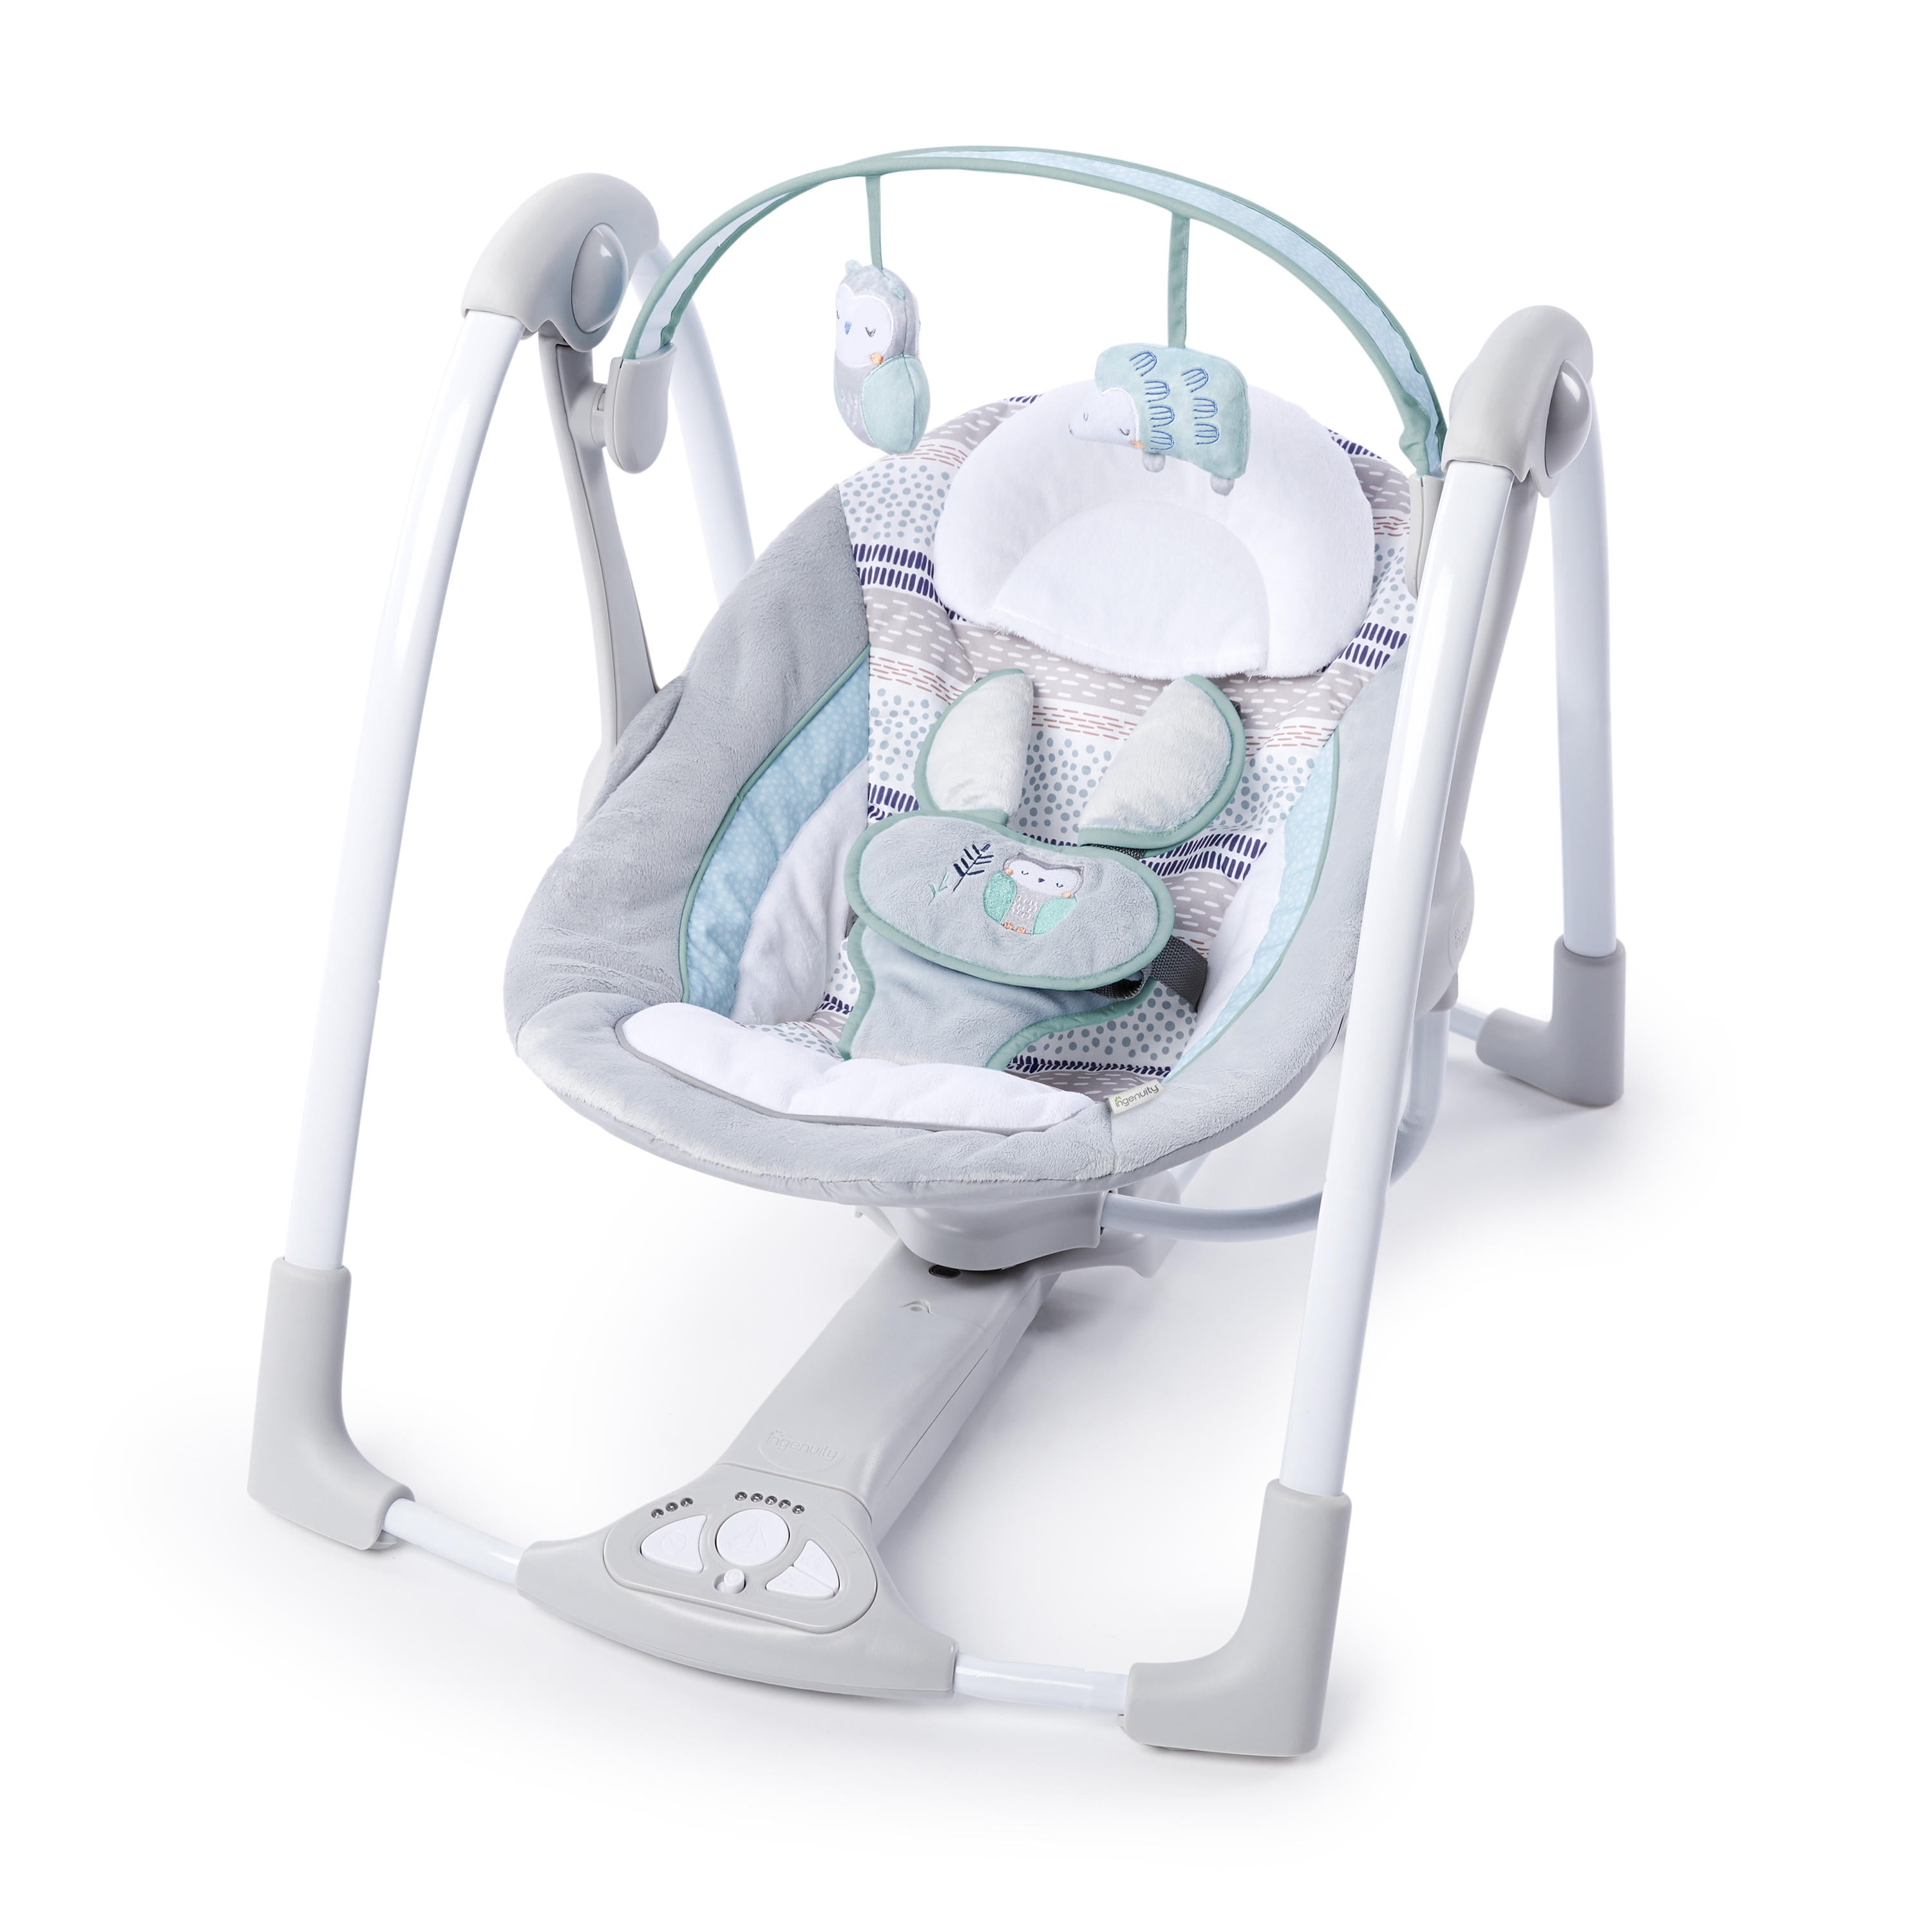 Tcaijing Baby swing smart electric swing chair cradle rocking crib baby rocking bed sleeping artifact